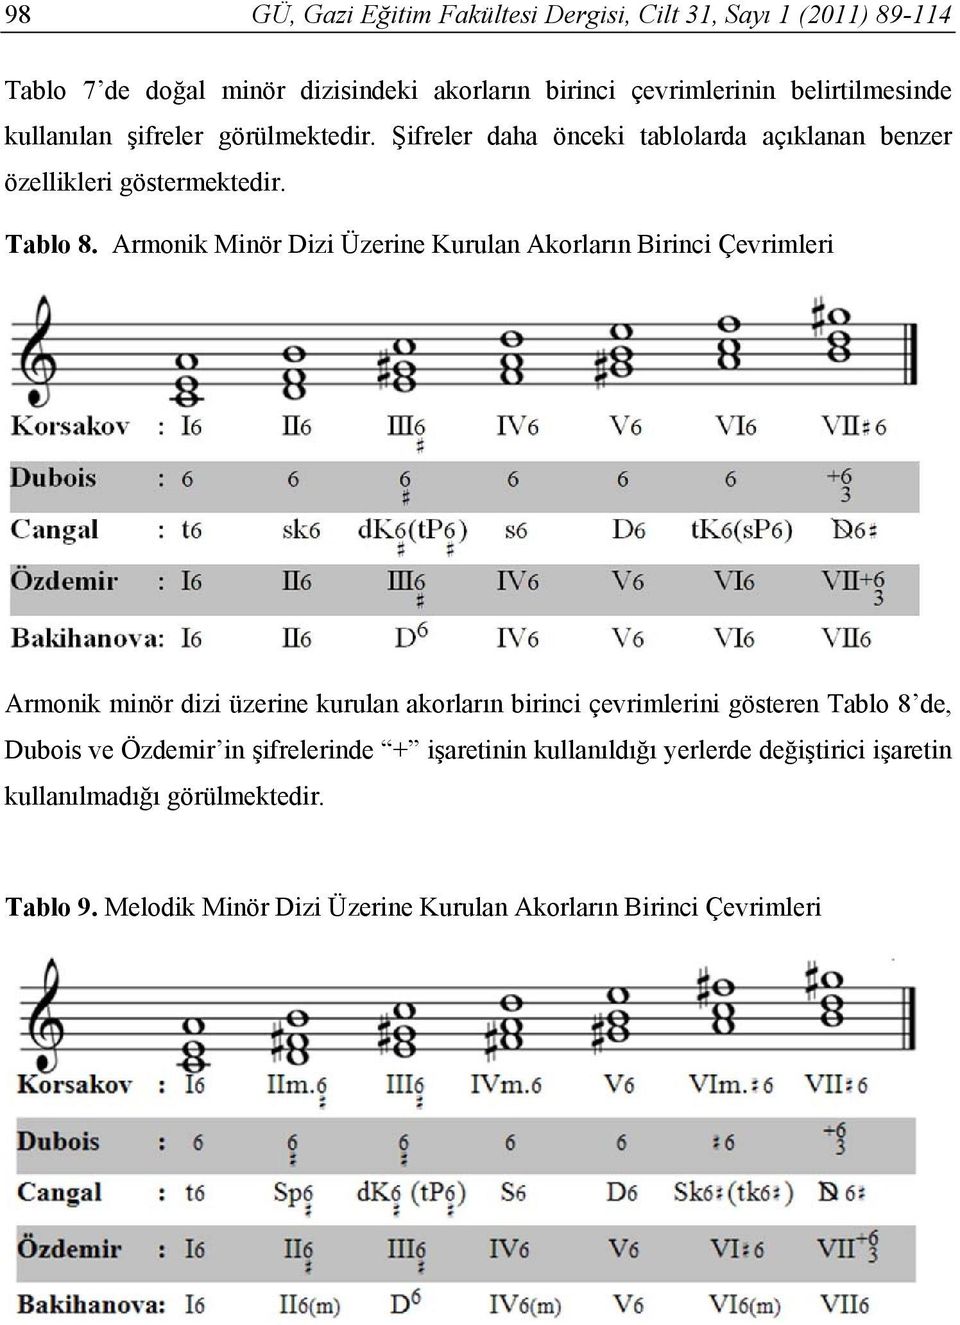 Armonik Minör Dizi Üzerine Kurulan Akorların Birinci Çevrimleri Armonik minör dizi üzerine kurulan akorların birinci çevrimlerini gösteren Tablo 8 de,